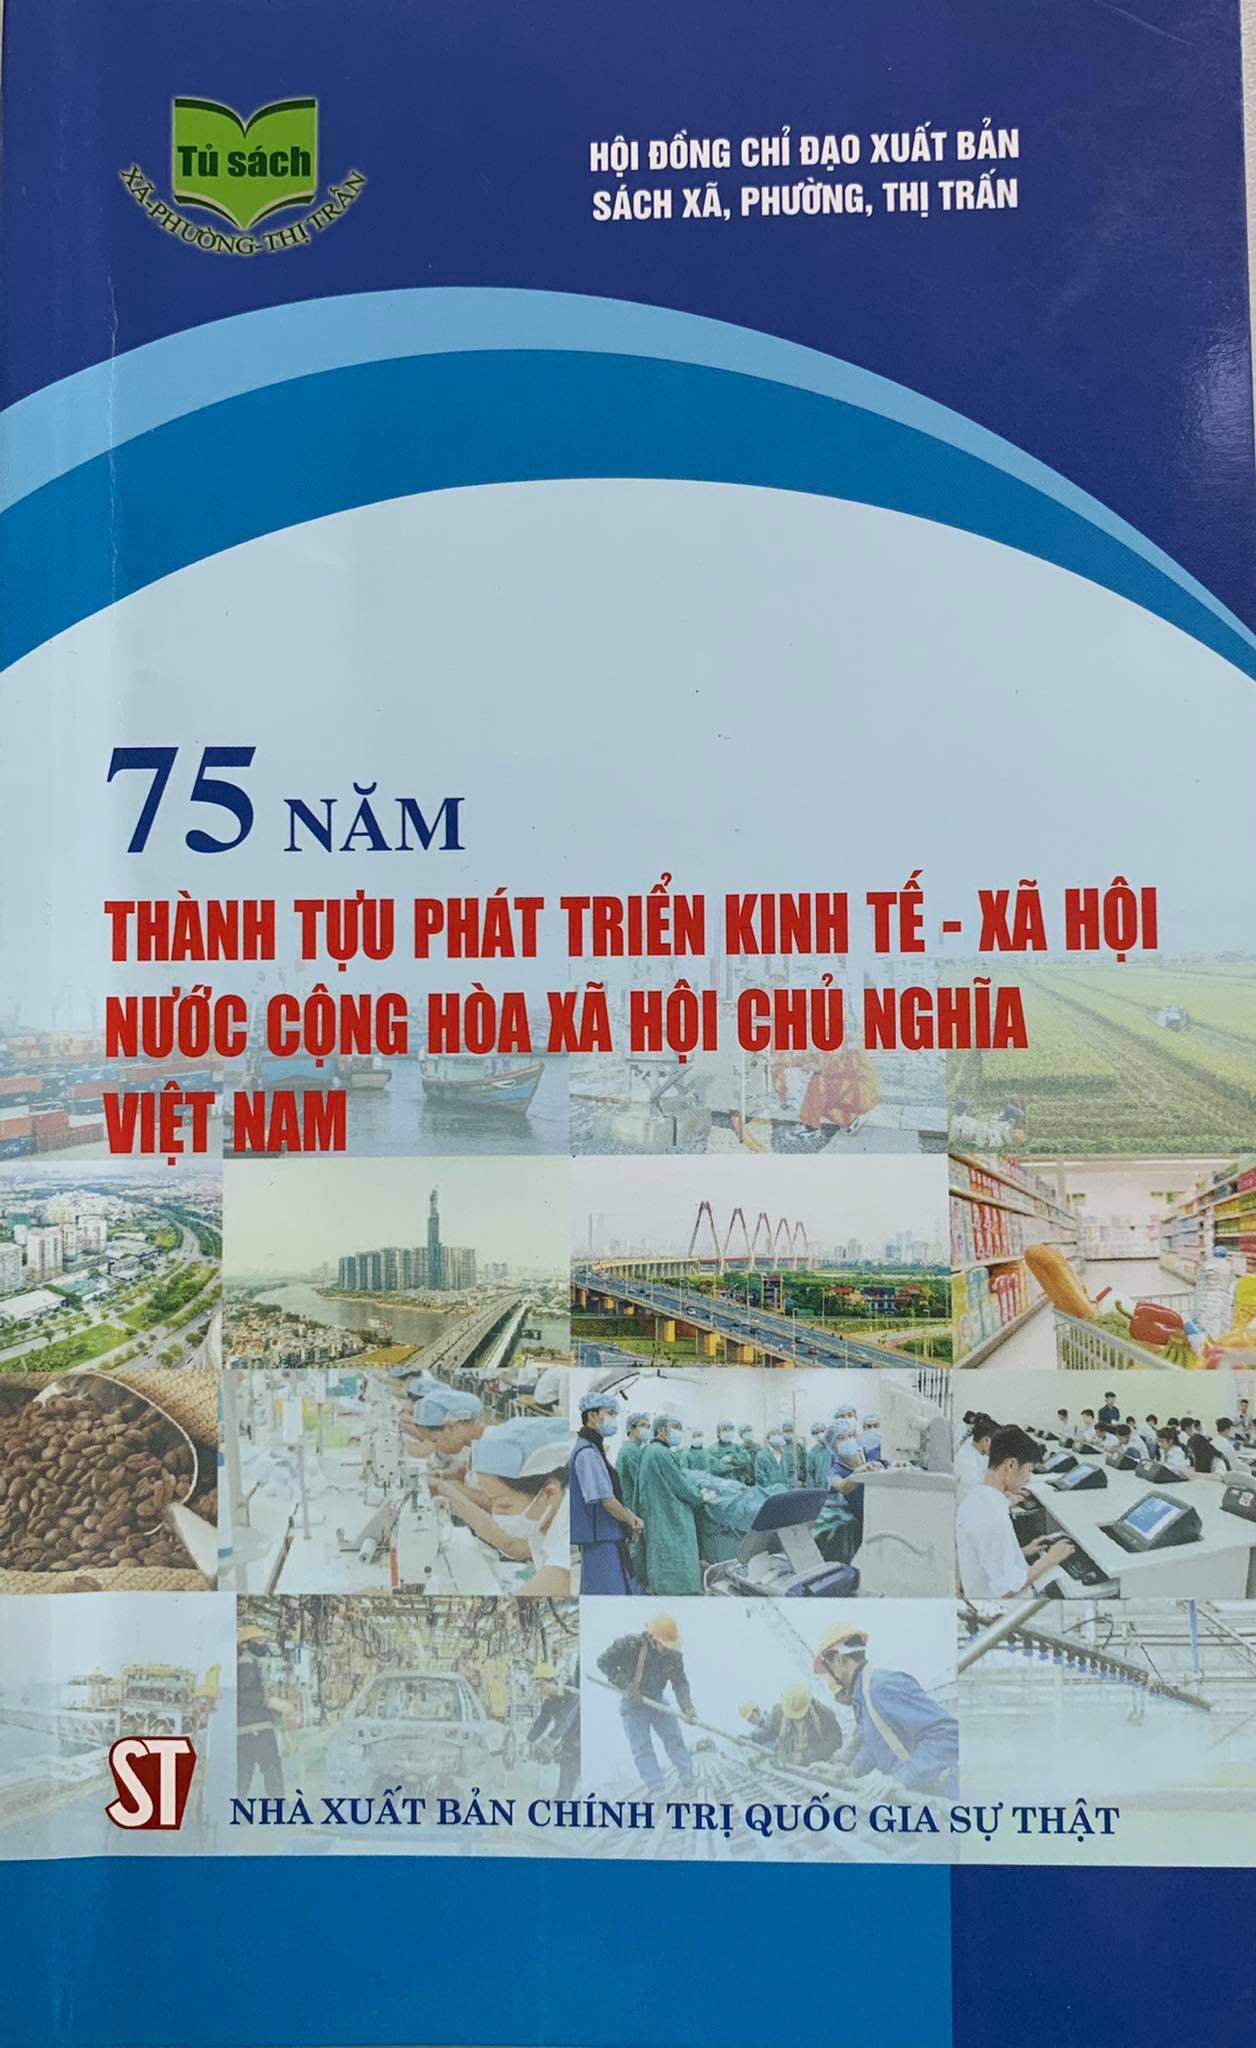 75 năm thành tựu phát triển kinh tế - xã hội nước Cộng hòa xã hội chủ nghĩa Việt Nam